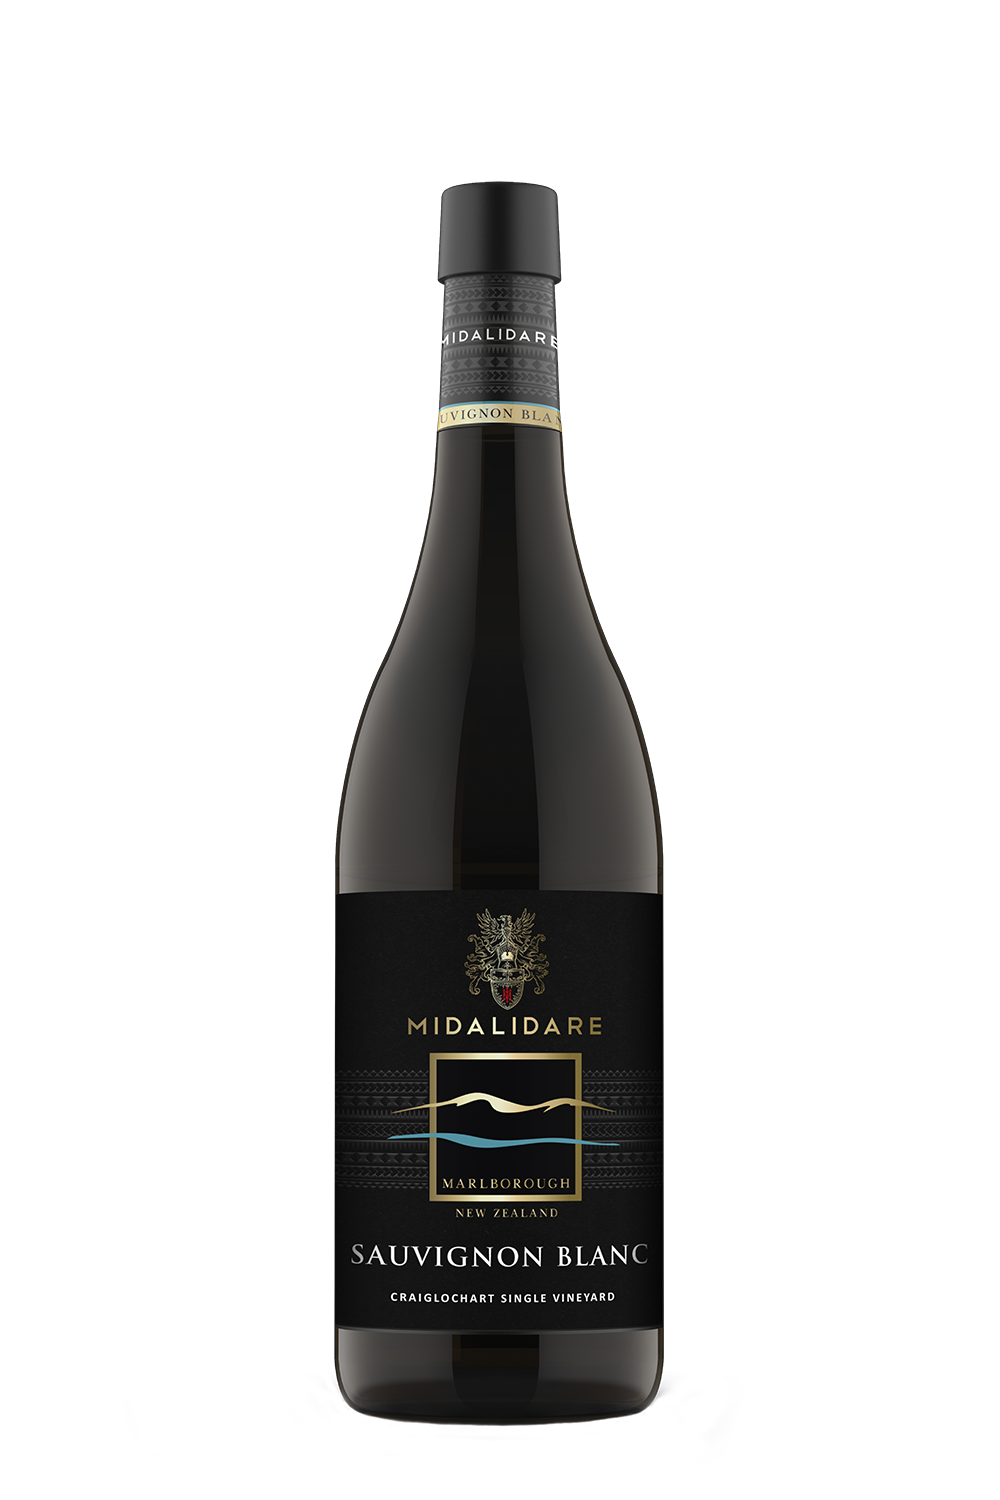 Представяме Midalidare New Zealand Marlborough Sauvignon Blanc: вино, създадено от винарския екип на Мидалидаре, от грозде, отгледано и винифицирано в Марлборо.